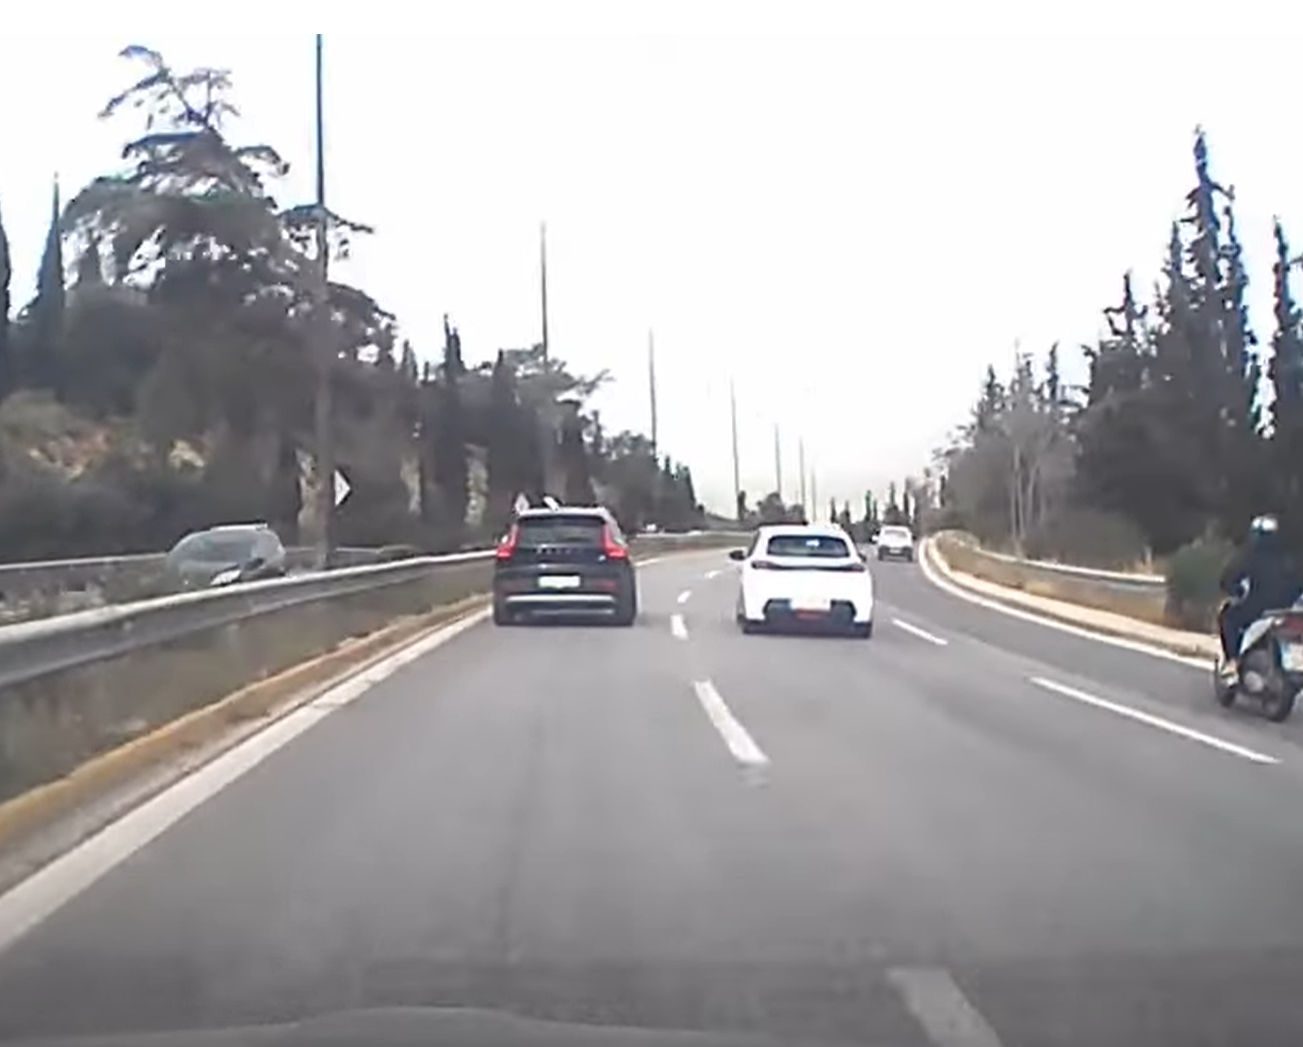 Βίντεο σοκ: Οδηγός τράκαρε αλλά συνέχισε με διαλυμένο ΙΧ την τρελή πορεία του